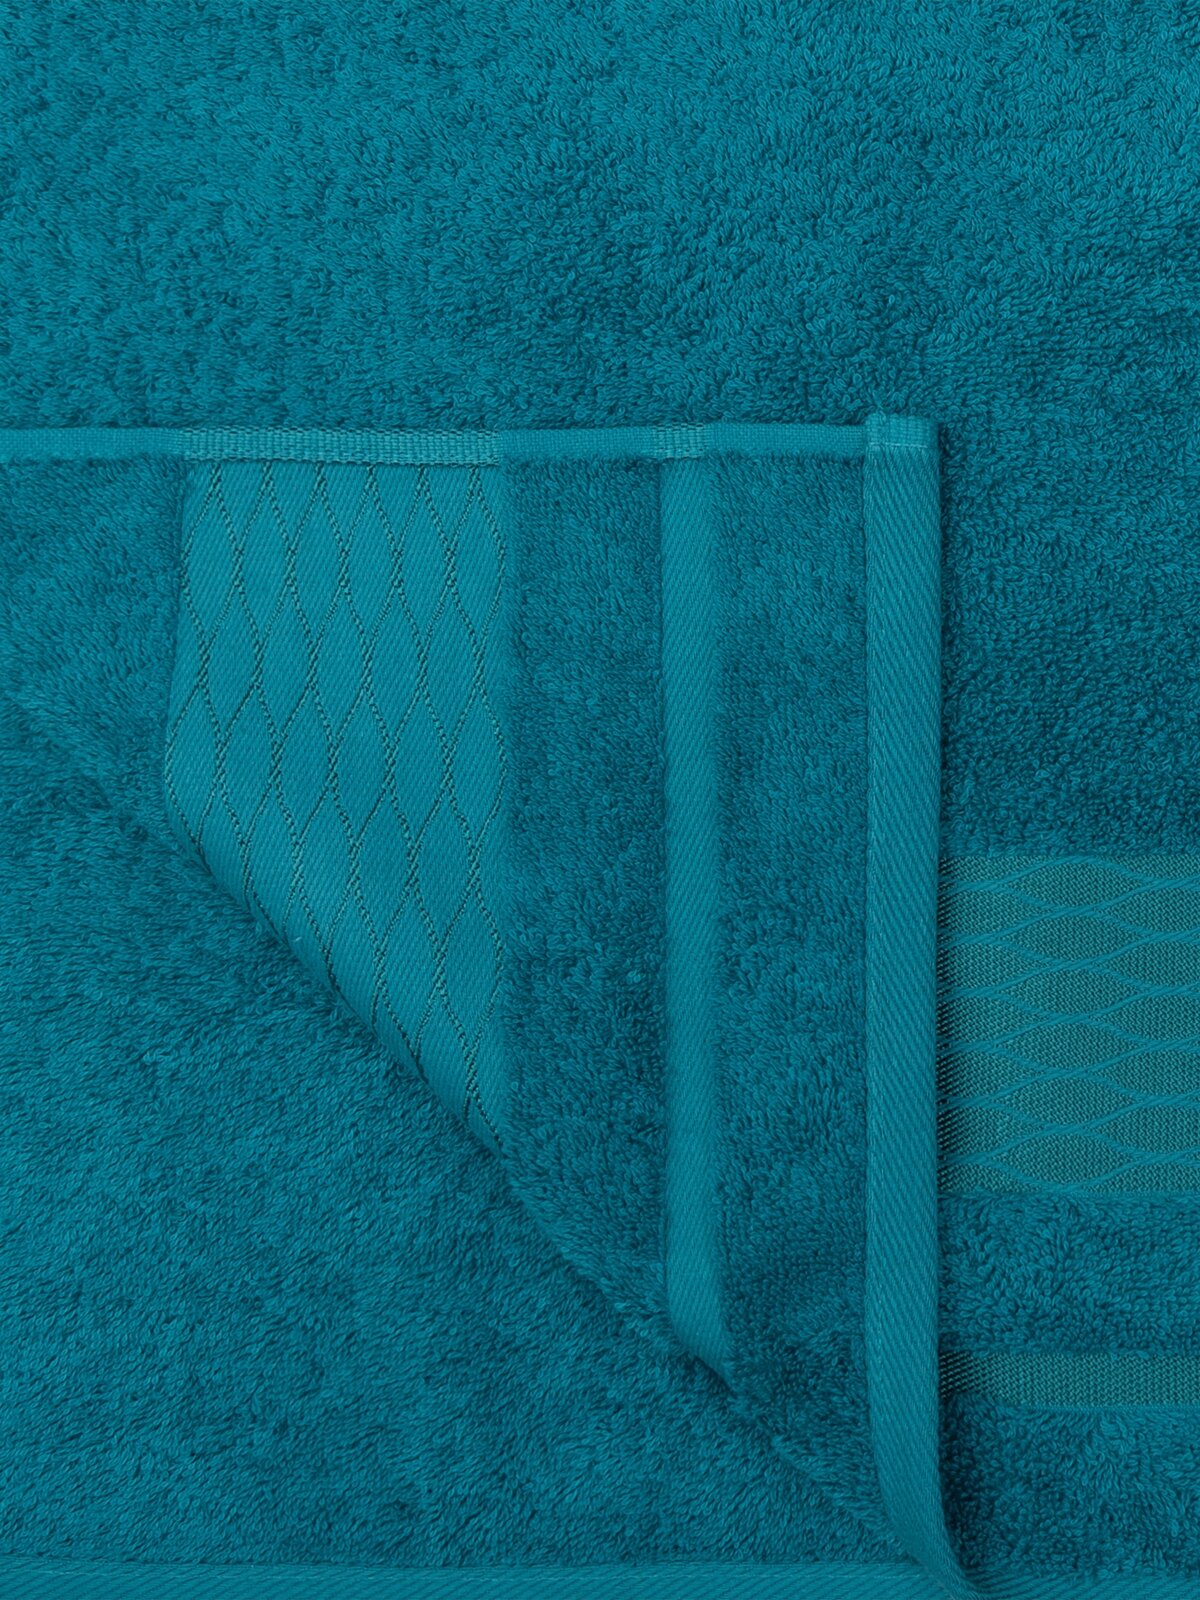 Полотенце махровое для лица и рук, Донецкая мануфактура,Reptile, 50Х90 см, цвет: голубой , 100% хлопок - фотография № 3